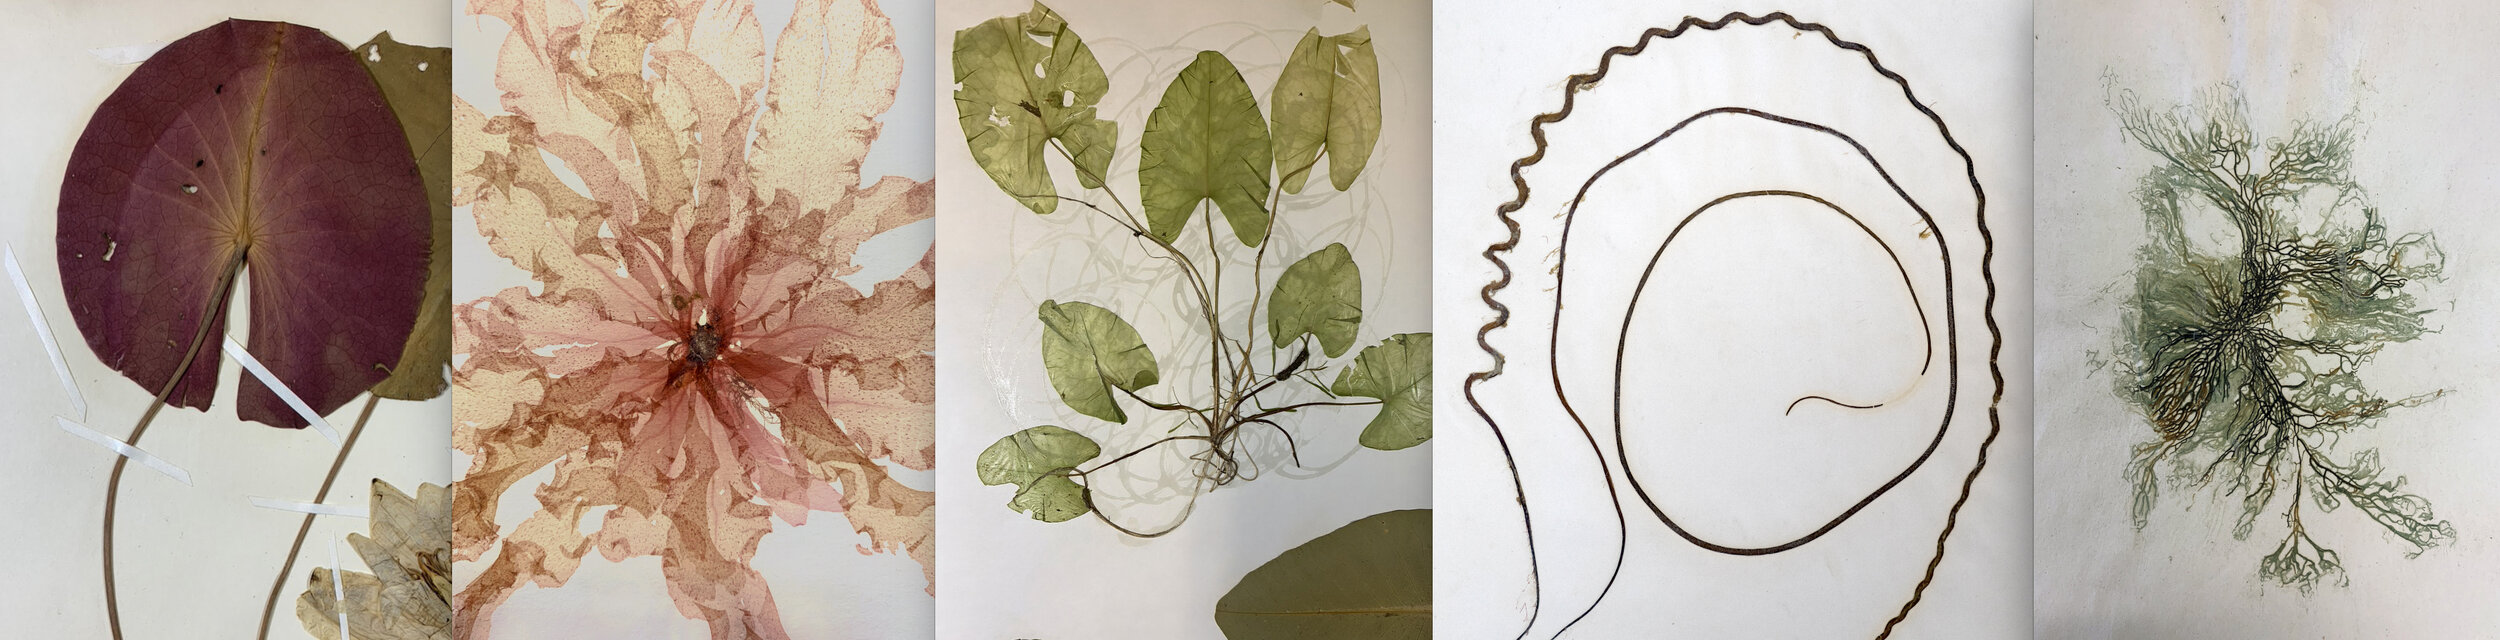 Herbarium, details